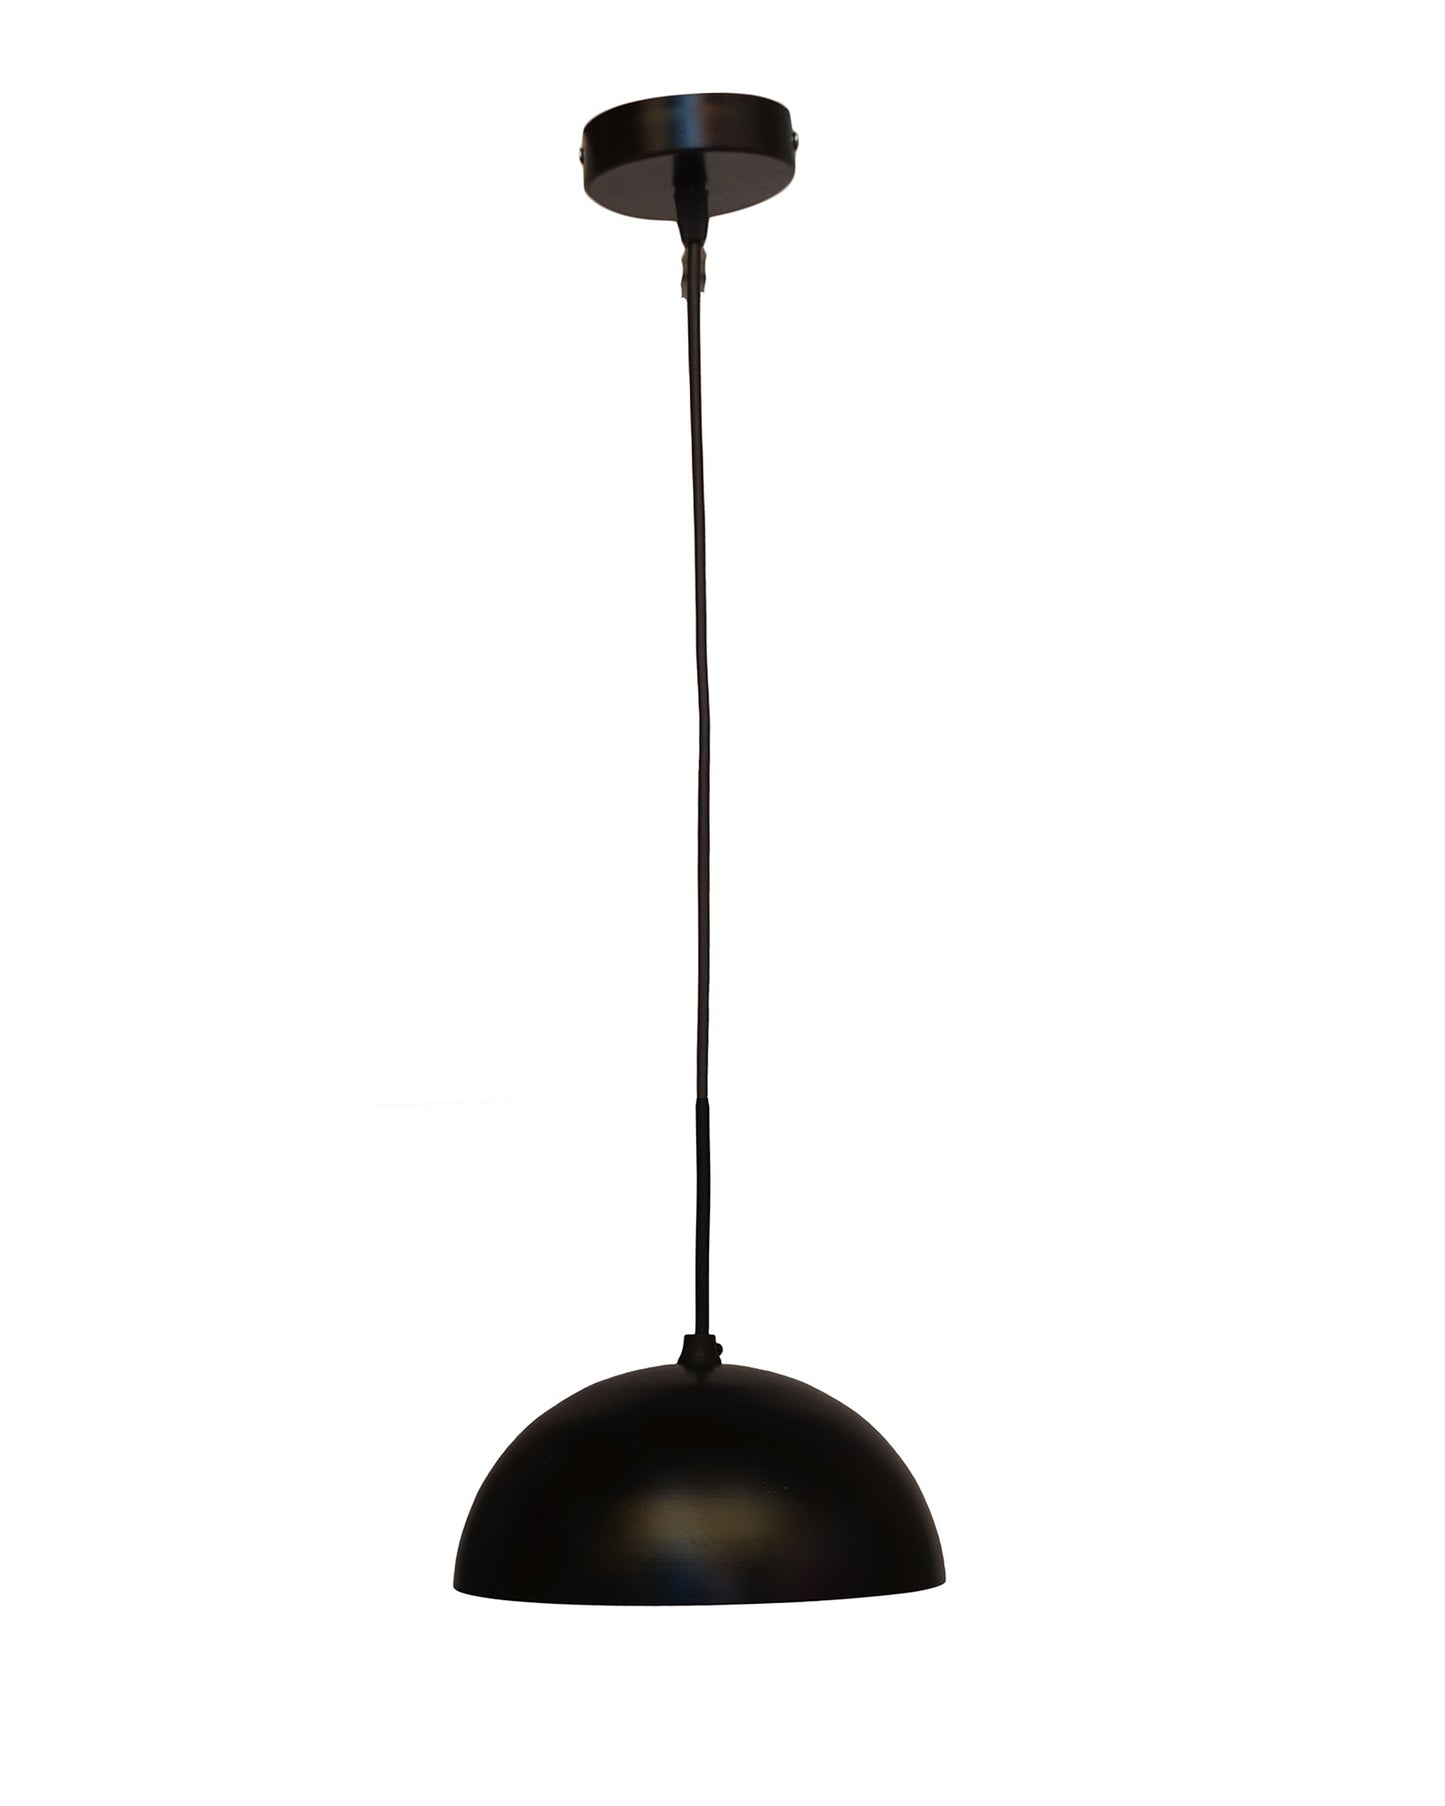 Metallic Pendant hanging light, hanging lamp 8"